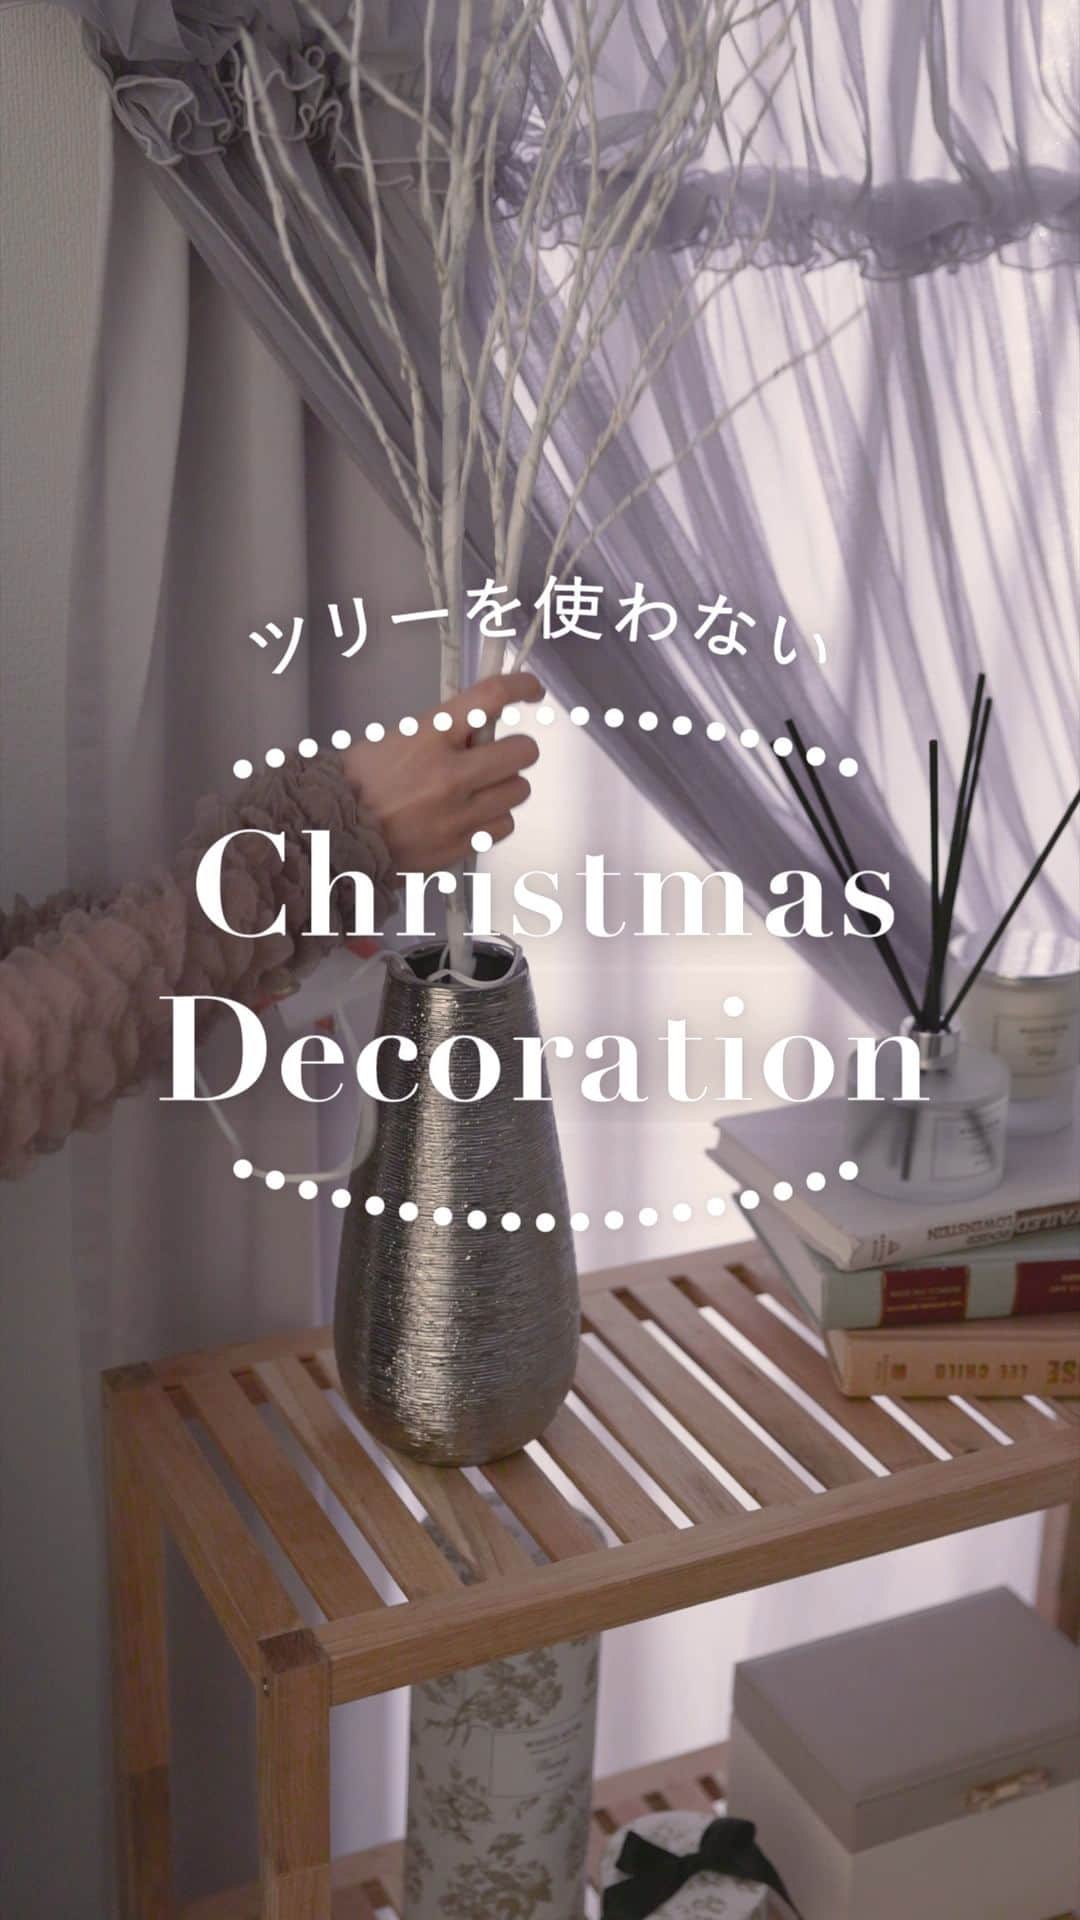 Francfrancのインスタグラム：「“ツリーを使わない” 𝐂𝐡𝐫𝐢𝐬𝐭𝐦𝐚𝐬 𝐃𝐞𝐜𝐨𝐫𝐚𝐭𝐢𝐨𝐧🪅✨  ひとり暮らしのお部屋にもおすすめの、 クリスマスツリーを使わないデコレーションをご紹介✨  気になるオーナメントはあるけれど、大きなツリーを飾るスペースがない🙅‍♀️ もっと手軽にクリスマスの装飾を楽しみたい…  そんな方におすすめの、オーナメントを使ったお部屋のデコレーションです☺️🛋️  ①小さなオーナメントを使ったブランチデコレーション ┈┈┈┈┈┈┈┈┈┈┈┈┈┈┈┈┈┈┈┈┈┈┈┈ LEDが光る白いブランチツリーは、通年で飾っていただけるデザインなので、収納スペースを気にしなくて良い点が嬉しいポイント💓  好きなフラワーベースに飾って、ホリデーシーズンには小さなオーナメントをかけて楽しめます🪅  煌びやかな存在感がある一方で、どんなお部屋にも馴染みやすいデザイン♪  別売りの4㎝のセットオーナメントは14個セットなので、余ったオーナメントを使ってお部屋を装飾するのもおすすめです🛋️✨  ブランチツリー 2本セット　¥3,200（税込） セットオーナメント 4cm　¥900（税込）  ②オーナメントを使ったお部屋デコレーション ┈┈┈┈┈┈┈┈┈┈┈┈┈┈┈┈┈┈┈┈┈┈┈┈ お気に入りのオーナメントを、フレグランスやドアノブ、カーテンフックなど お部屋にあるアイテムに引っ掛けるだけでパッとクリスマスの雰囲気に🚪！  気になっていたオーナメントを使ってお手軽にクリスマスの雰囲気を楽しめます💚  かんたんに取り入れられるクリスマスデコレーションで、ホリデーシーズンを楽しみませんか？🎅✨  ┈┈┈┈┈┈┈┈┈┈┈┈┈┈┈┈┈┈┈┈┈┈┈┈ ＼オーナメントマルシェ開催中！🪅／ 単品オーナメントが5点以上の購入で10%OFF!!👀 自分好みのオーナメントでクリスマスの飾り付けを楽しもう🩷 ┈┈┈┈┈┈┈┈┈┈┈┈┈┈┈┈┈┈┈┈┈┈┈┈  #francfranc #フランフラン #francfrancのある生活 #クリスマス #クリスマス雑貨 #クリスマス装飾 #オーナメント #クリスマスインテリア #クリスマスデコレーション #クリスマス準備 #マイルーム #インテリアコーディネート」